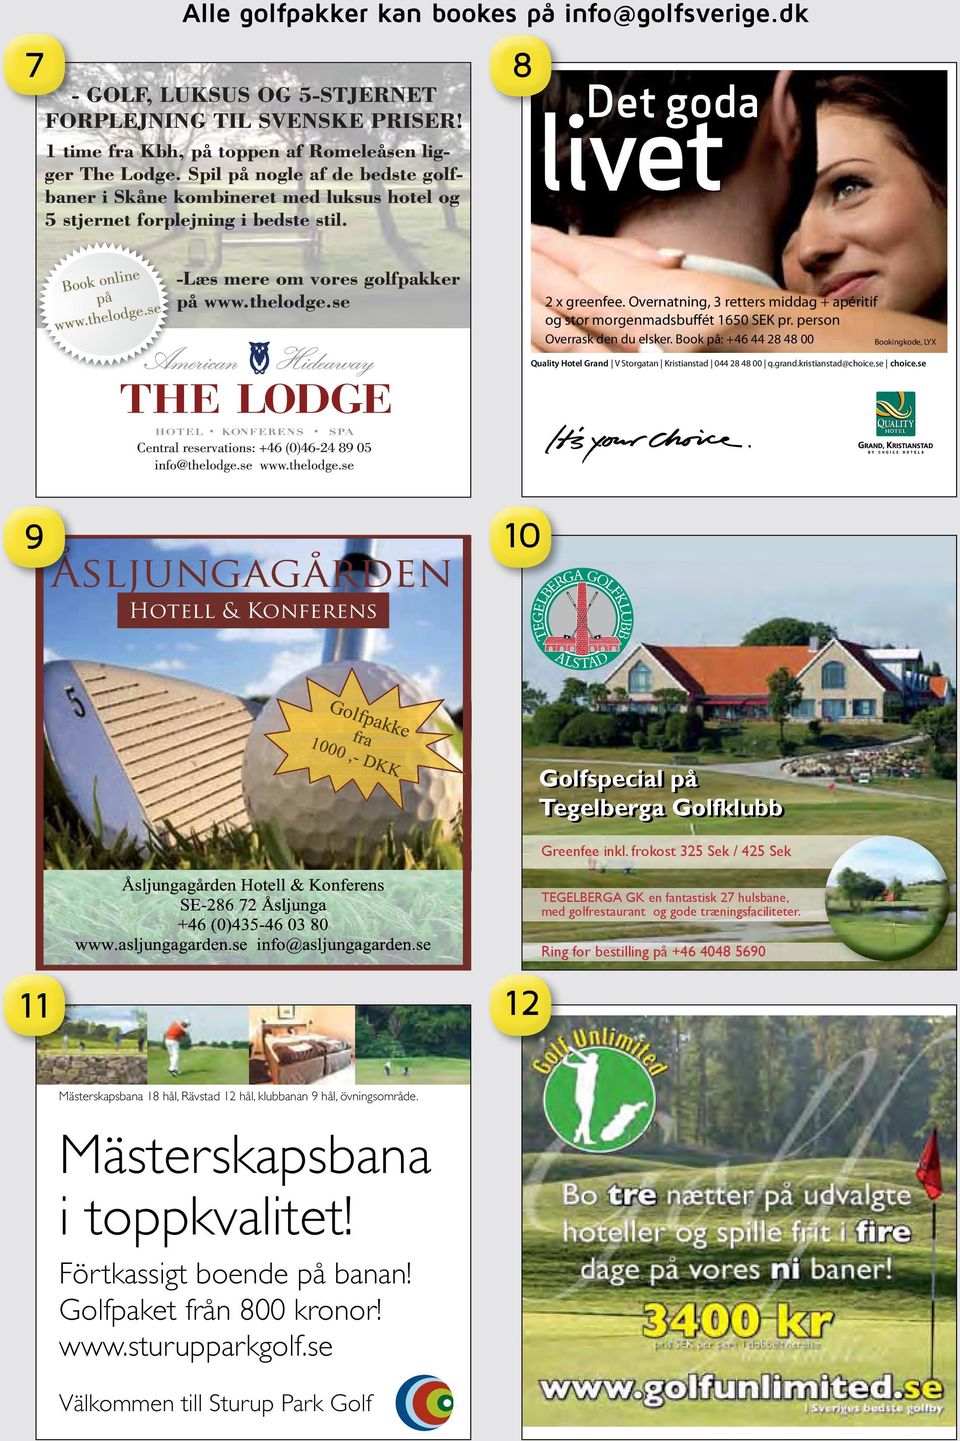 se 9 Åsljungagården Hotell & Konferens 10 Golfspecial på Tegelberga Golfklubb Greenfee inkl.